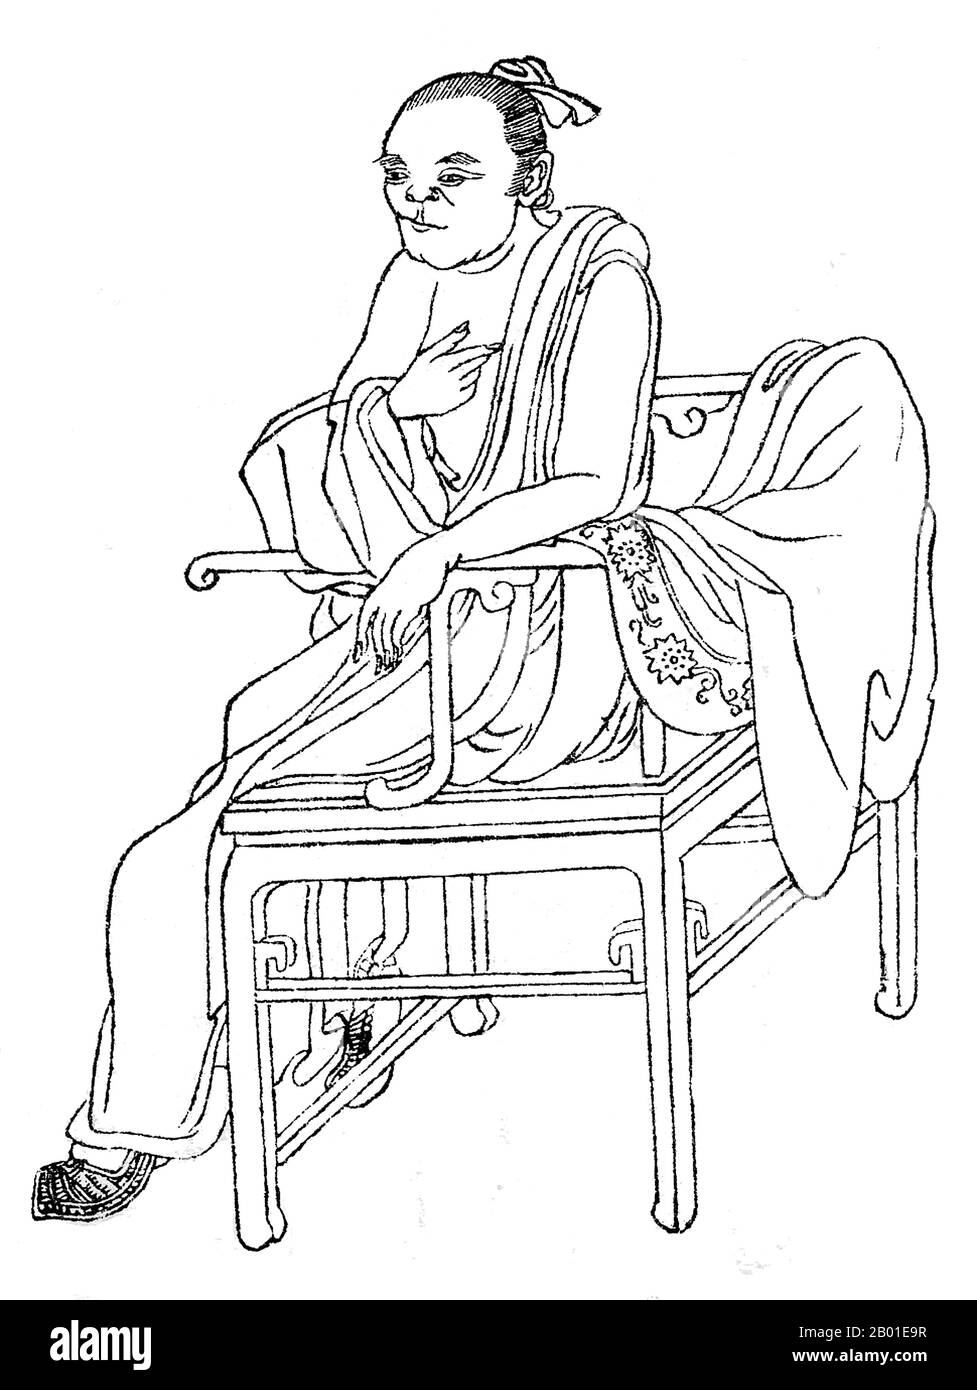 China: Sima Qian (ca. 145-86 BCE), Vater der chinesischen Historiographie und "große Historikerin" Chinas. Abbildung aus Wan Hsiao Tang-Chu Chuang-Hua Chuan, 1921. Sima Qian (Wade-Giles: SSU-ma CH'ien) war Präfekt der Großen Schriftsteller (太史公) der Han-Dynastie. Er gilt als Vater der chinesischen Historiografie für seine hoch gelobte Arbeit, Records of the Grand Historiker, eine allgemeine Geschichte Chinas im Stil von „Jizhuanti“, die mehr als zweitausend Jahre vom Gelben Kaiser bis zum Kaiser Wu von Han umfasst. Seine definitive Arbeit legte die Grundlage für spätere chinesische Historiographie. Stockfoto